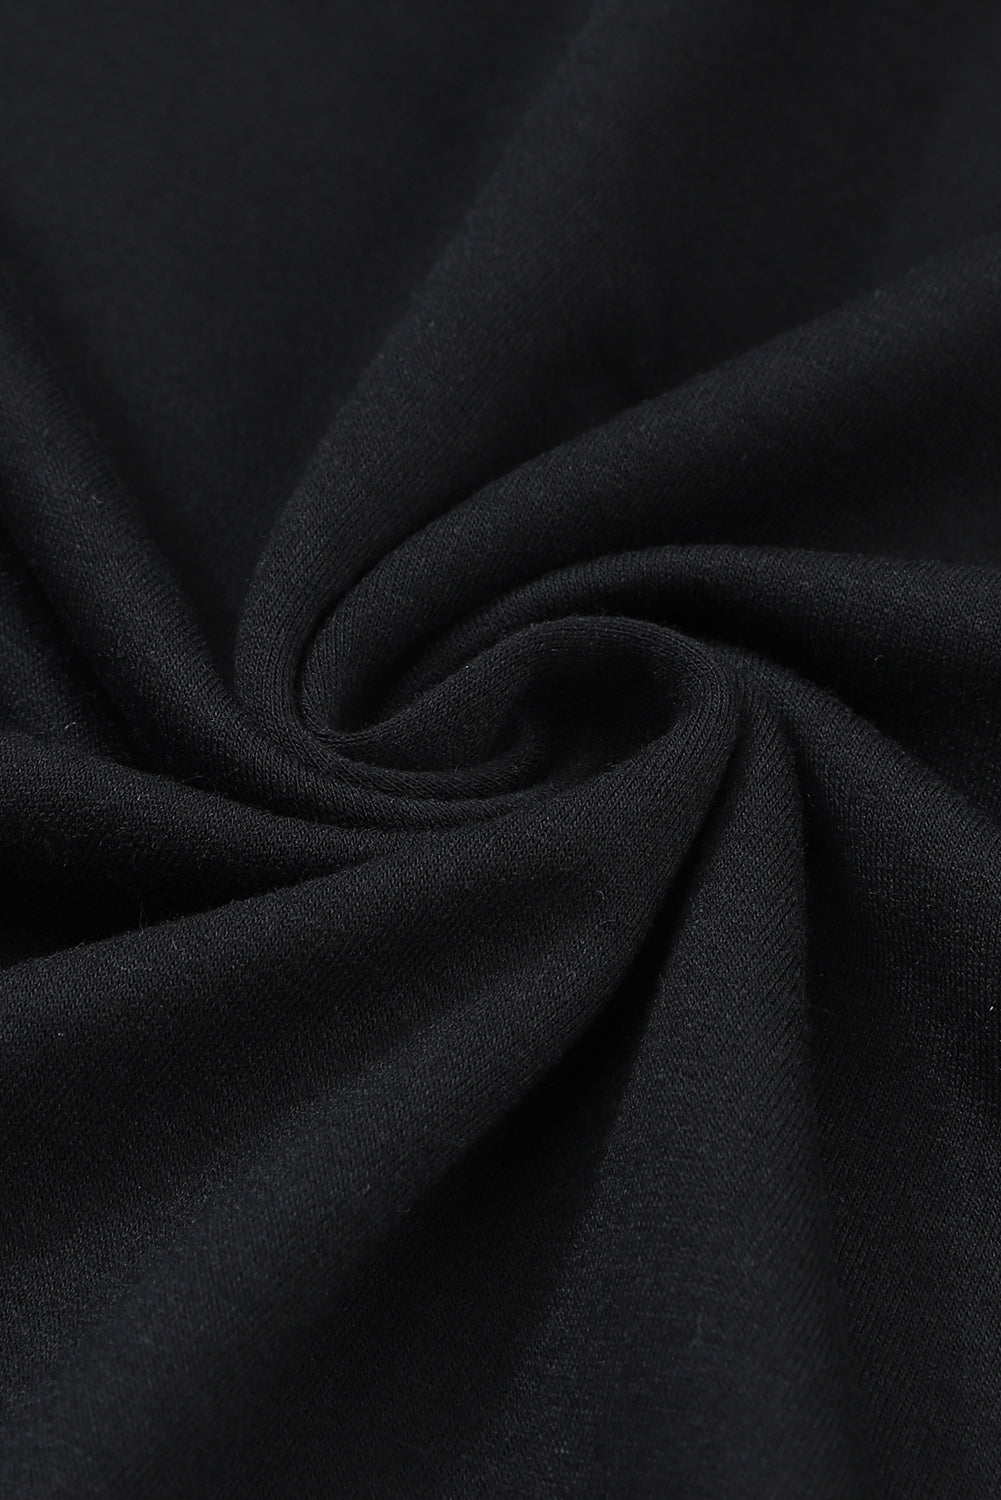 Schwarzes, asymmetrisch ausgeschnittenes, langärmliges Oberteil mit Knöpfen